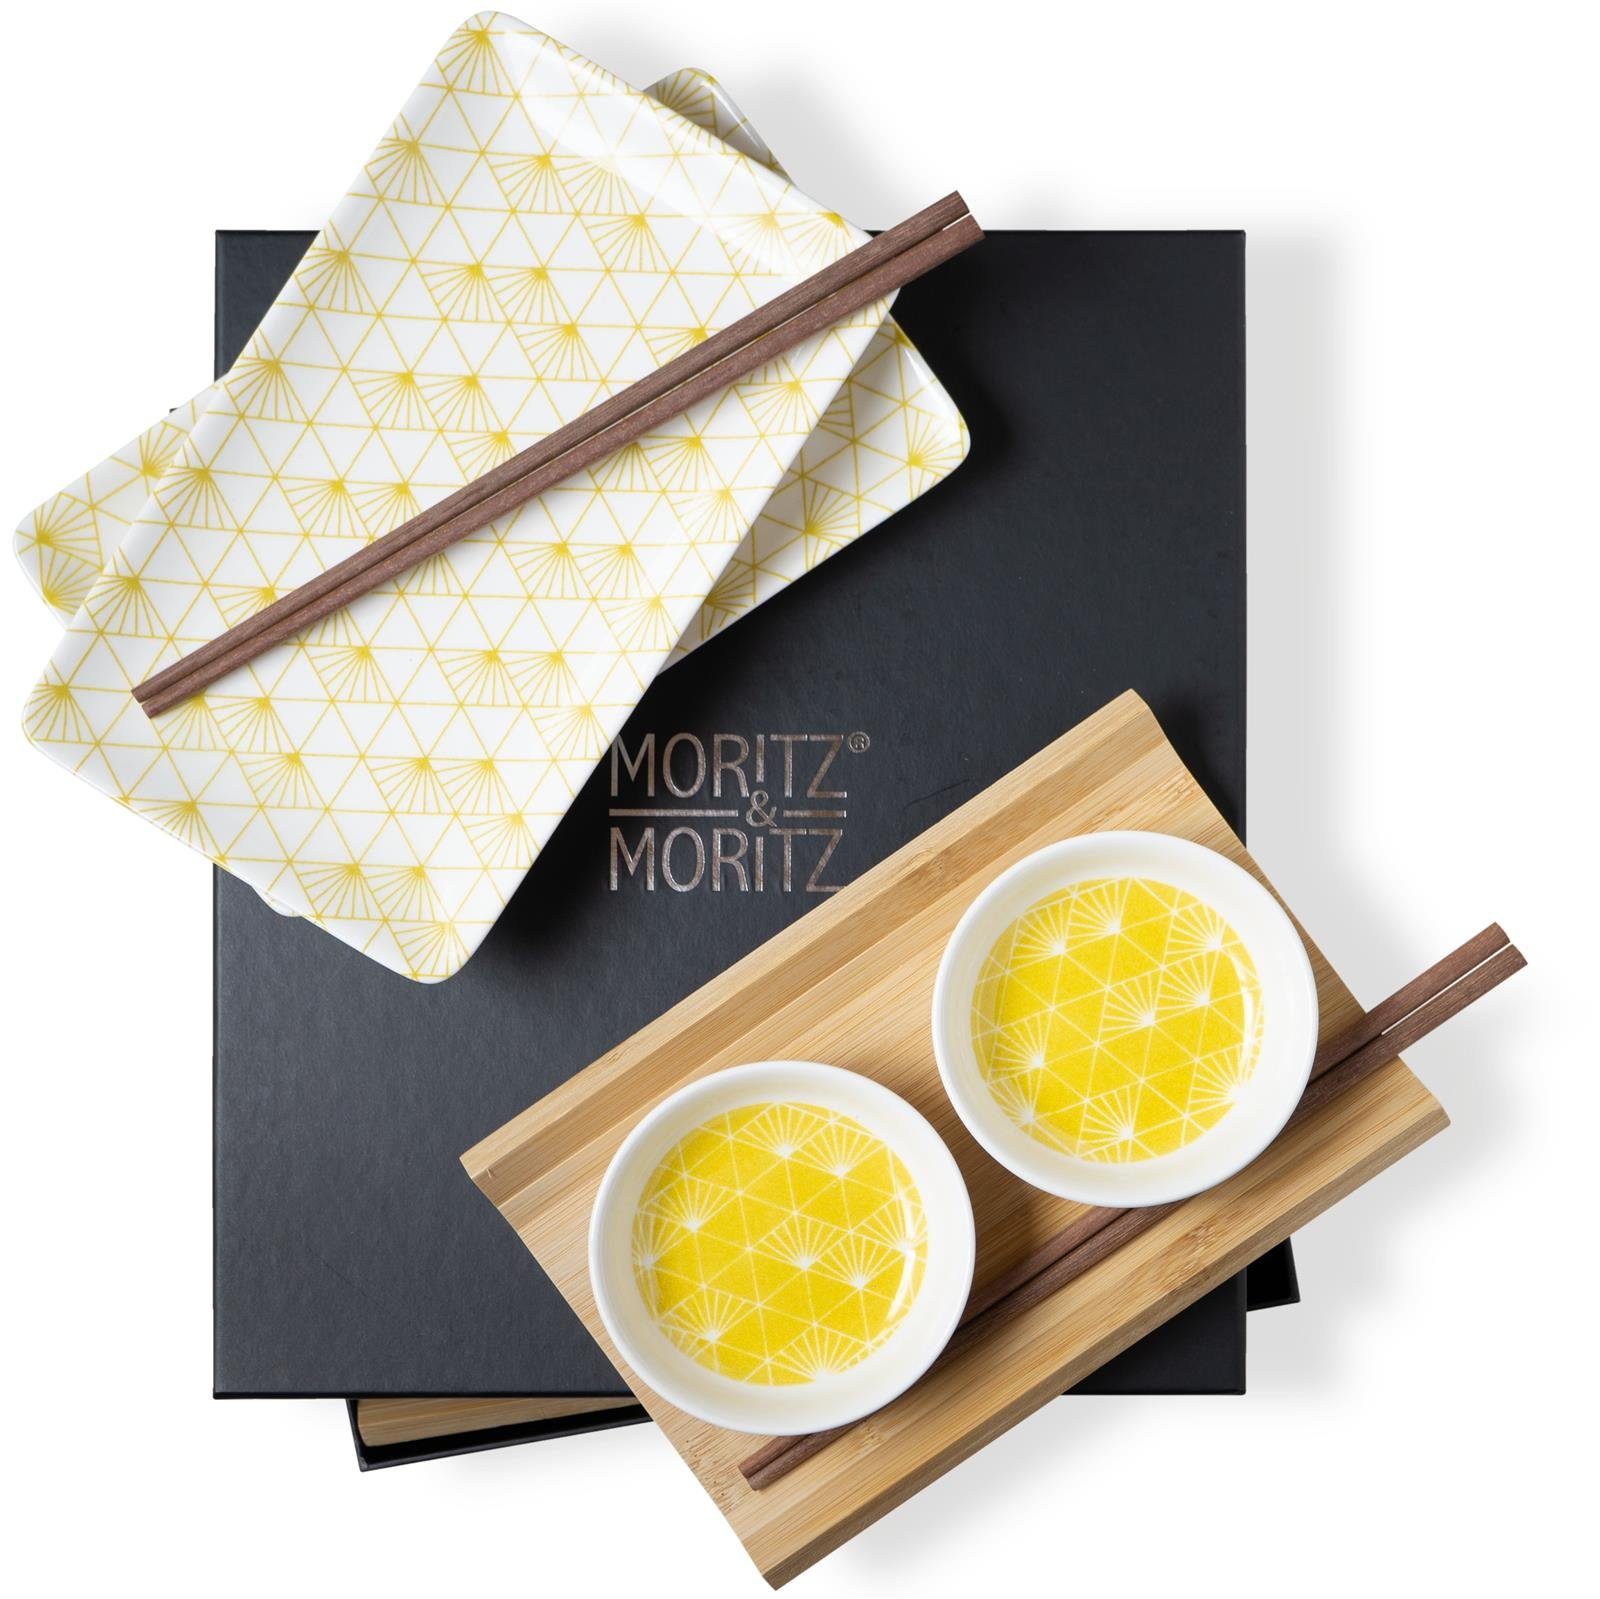 Moritz & Moritz Tafelservice Moritz & Moritz Gourmet - Sushi Set 10 teilig gelbe Strahlen (8-tlg), 2 Personen, Geschirrset für 2 Personen